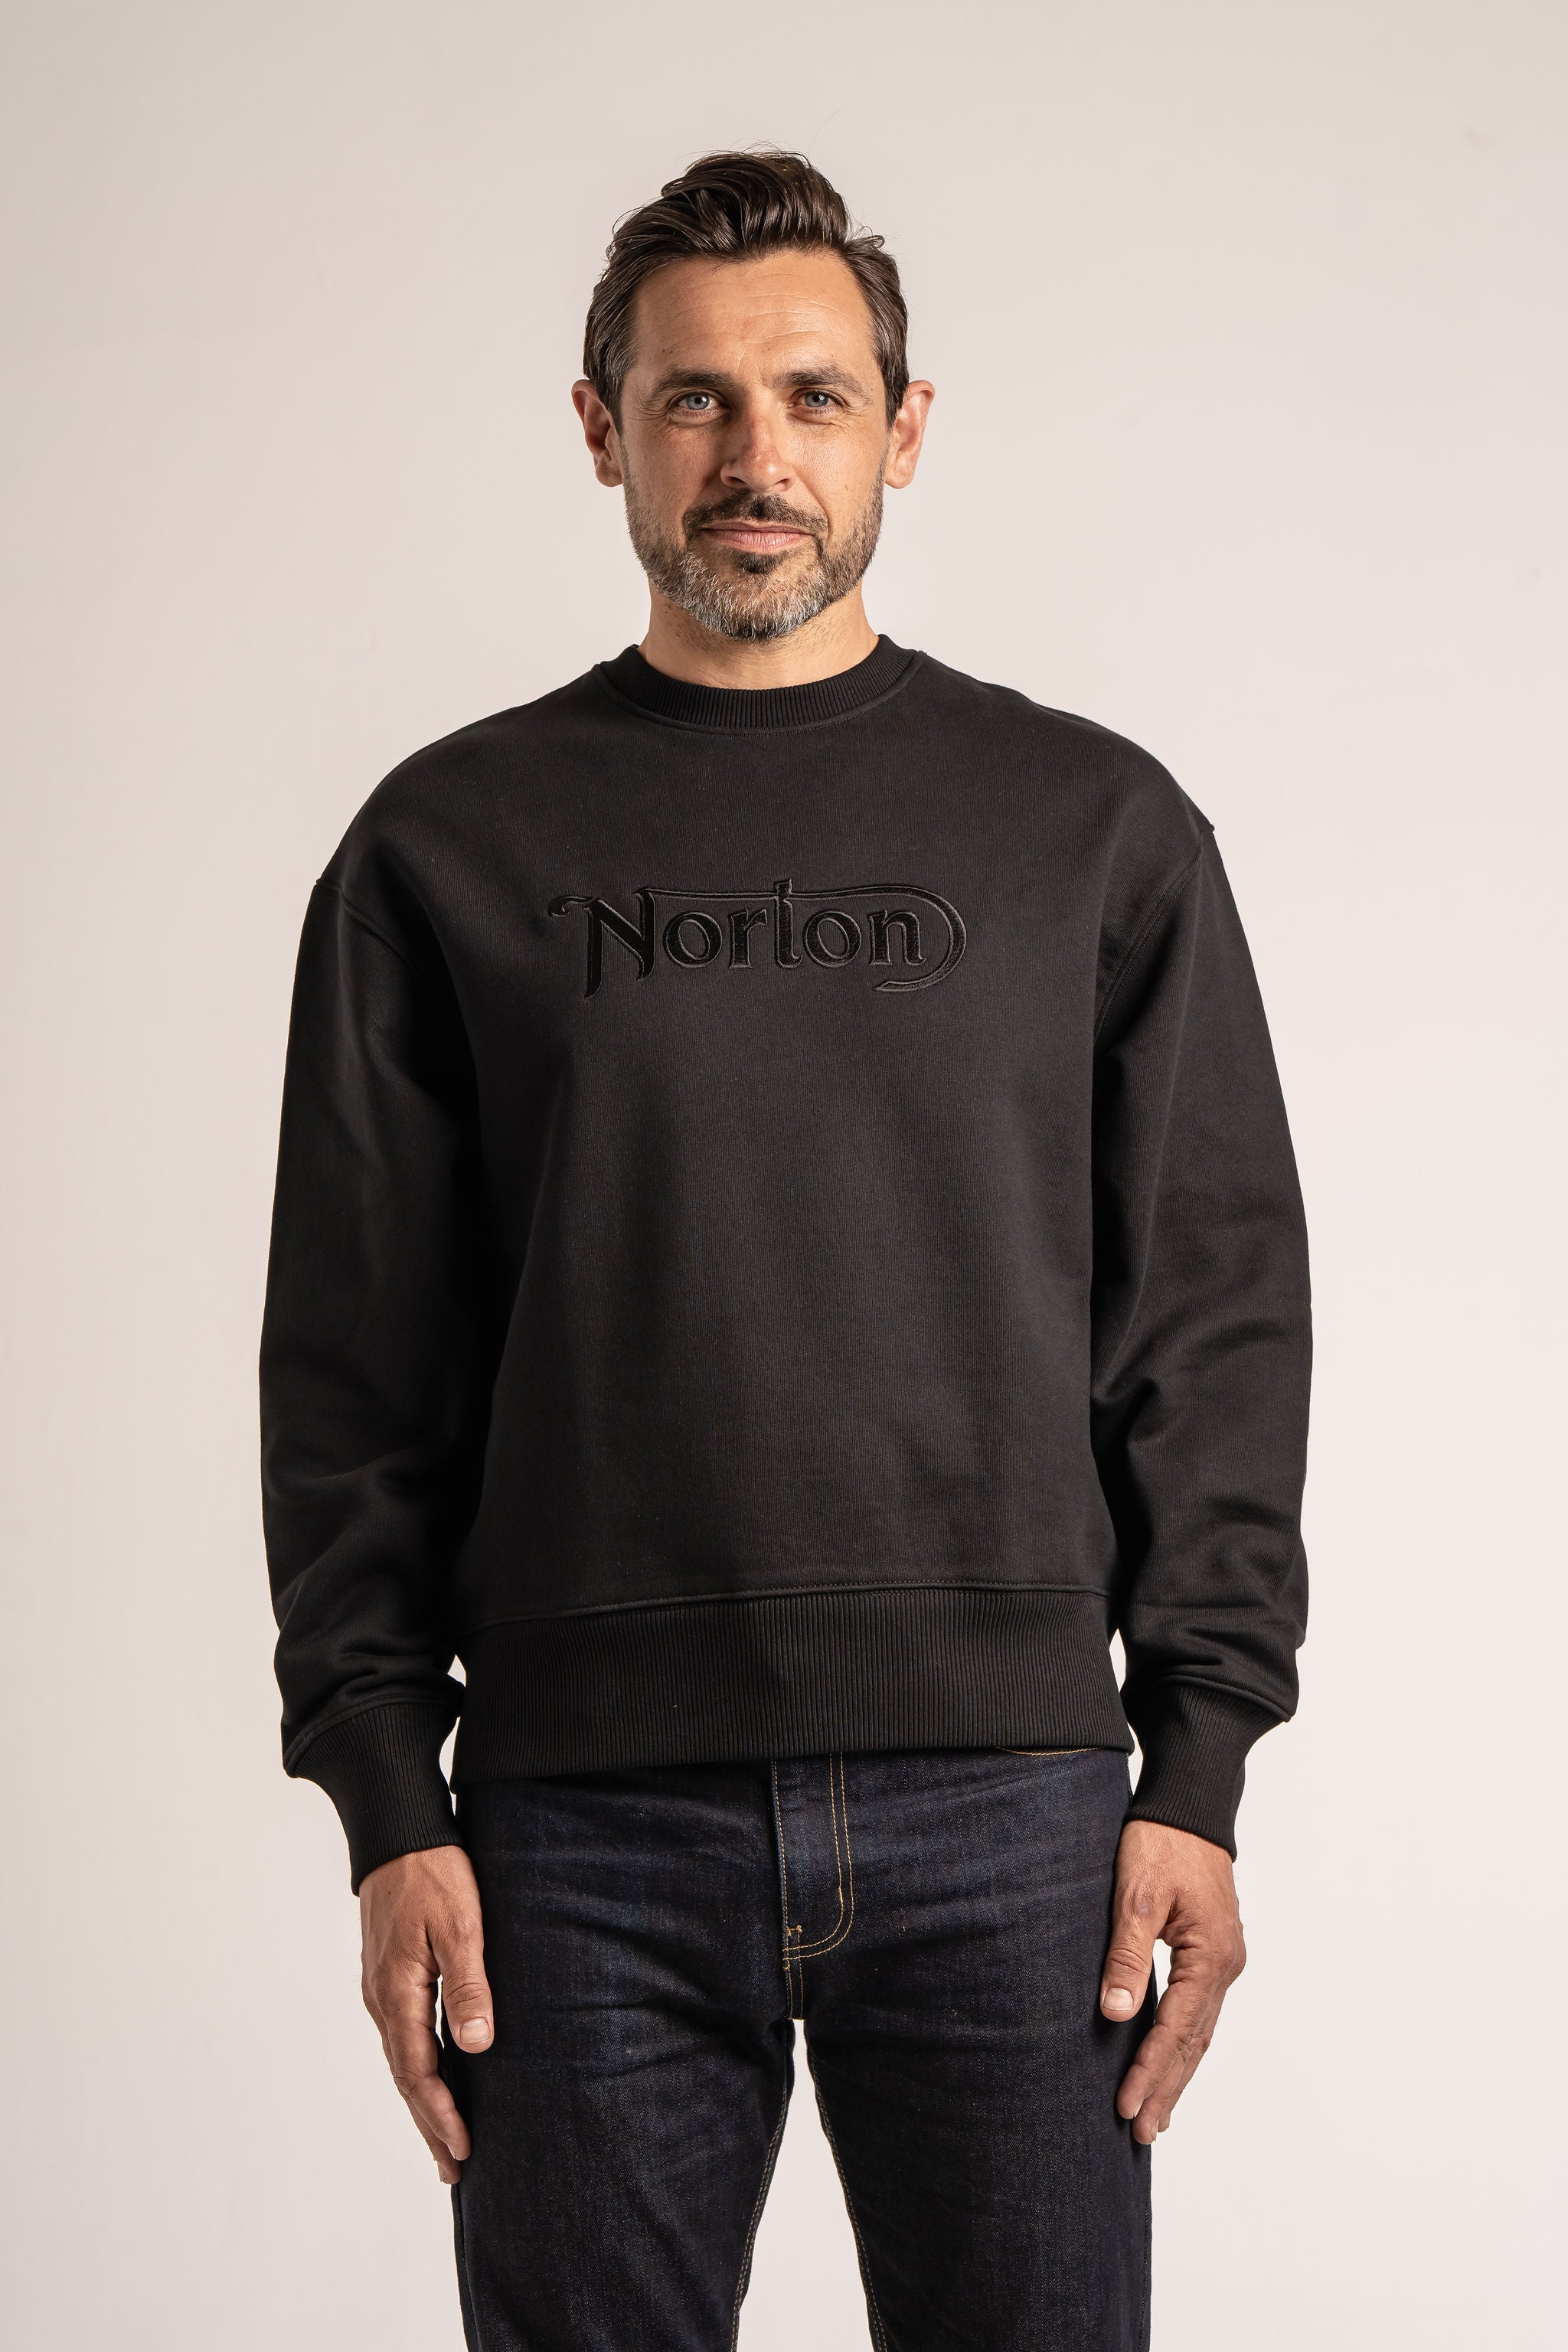 【国産定番】Vintage Norton Sweat Shirt 染込 霜降グレー モーター トップス